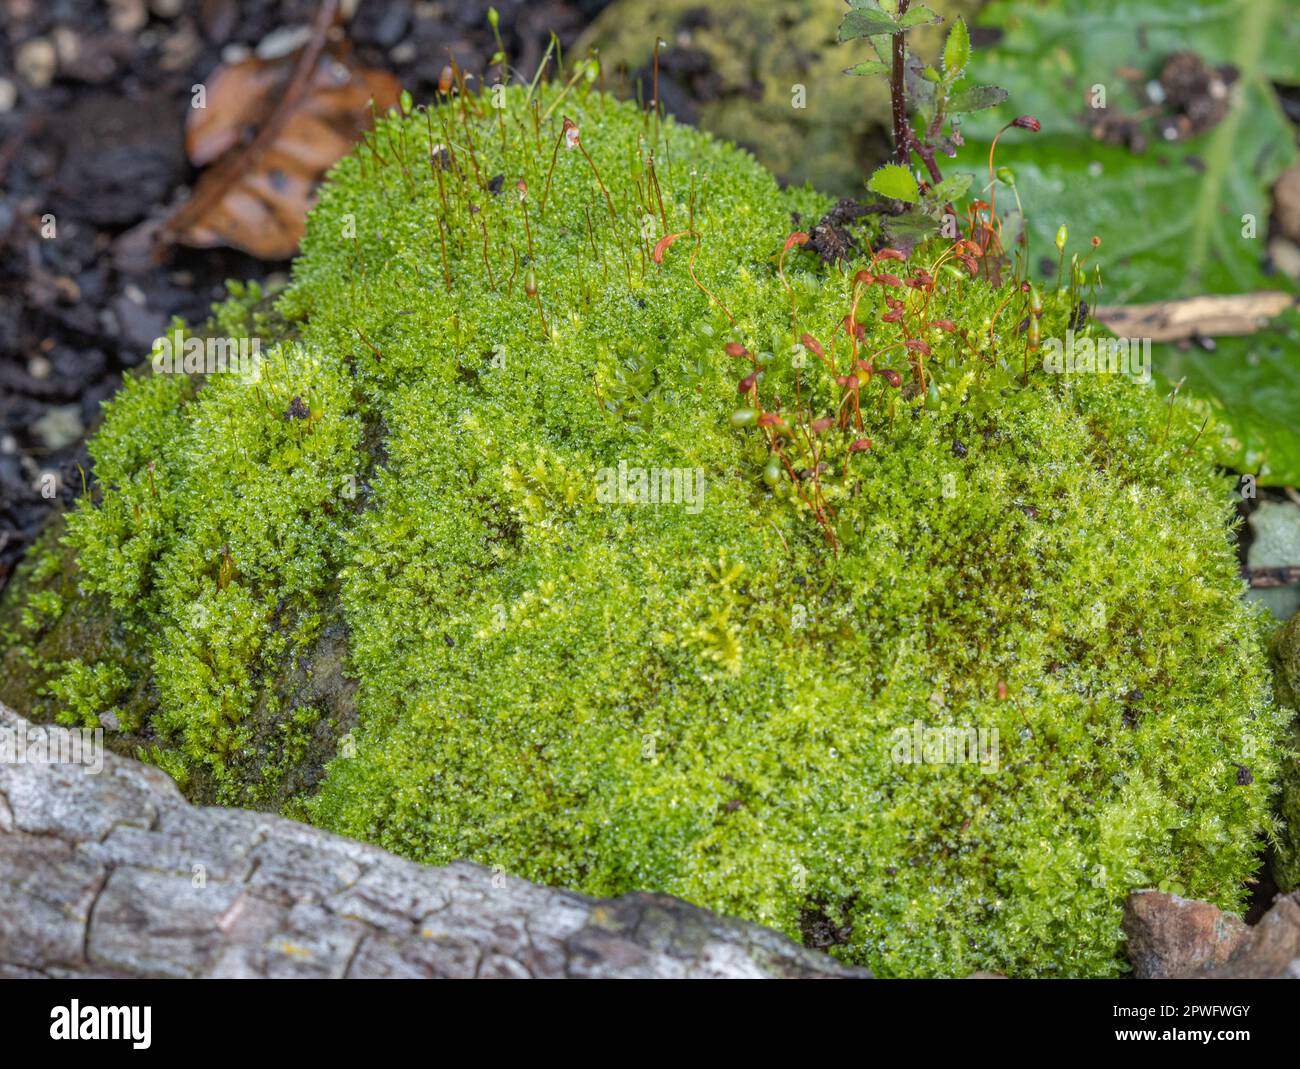 Bryophyte, mousse verte poussant sur un poteau de clôture en bois